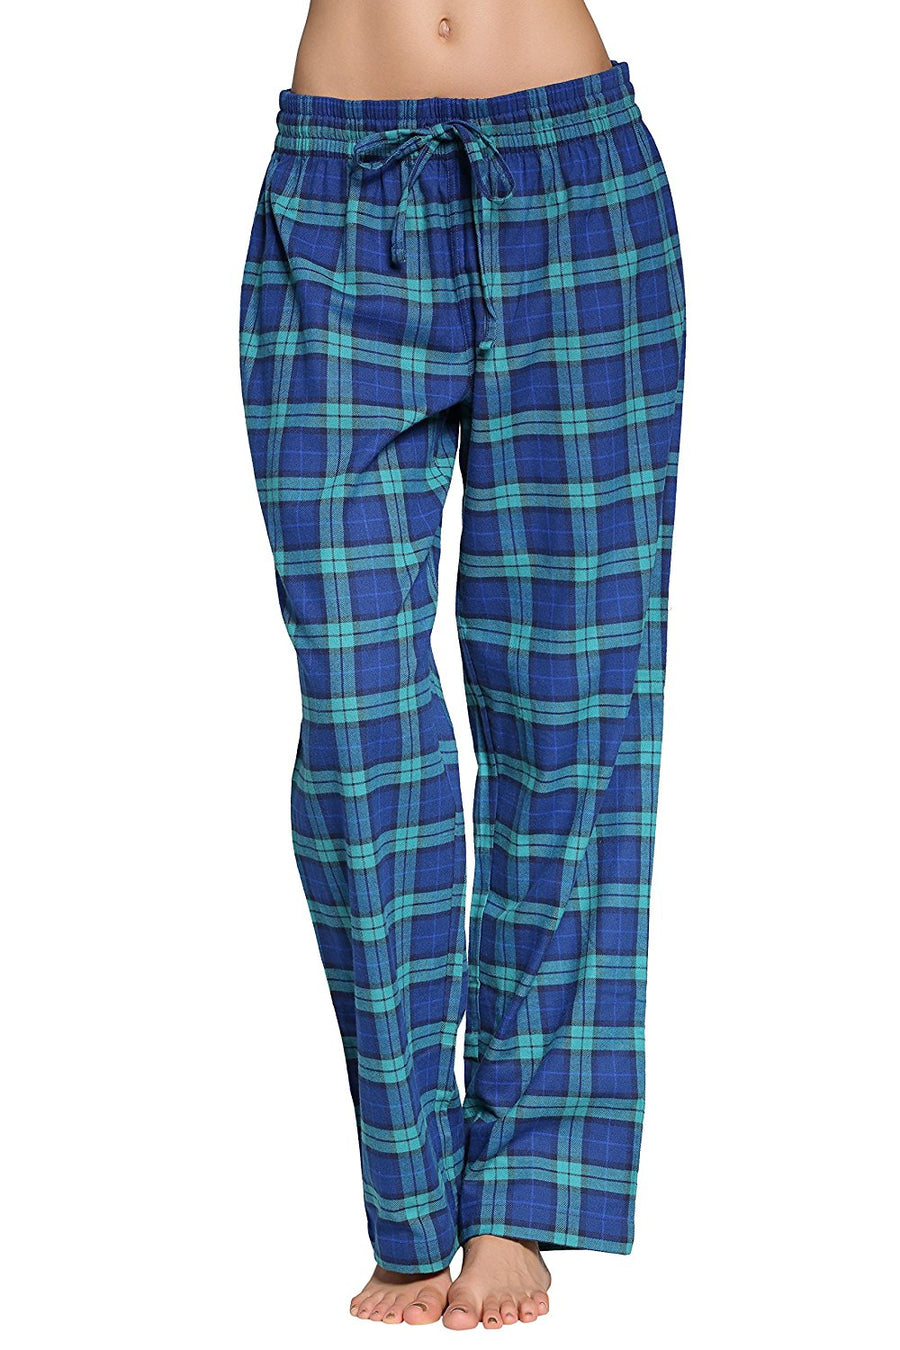 CYZ Women's 100% Cotton Super Soft Flannel Plaid Pajama/Louge Pants